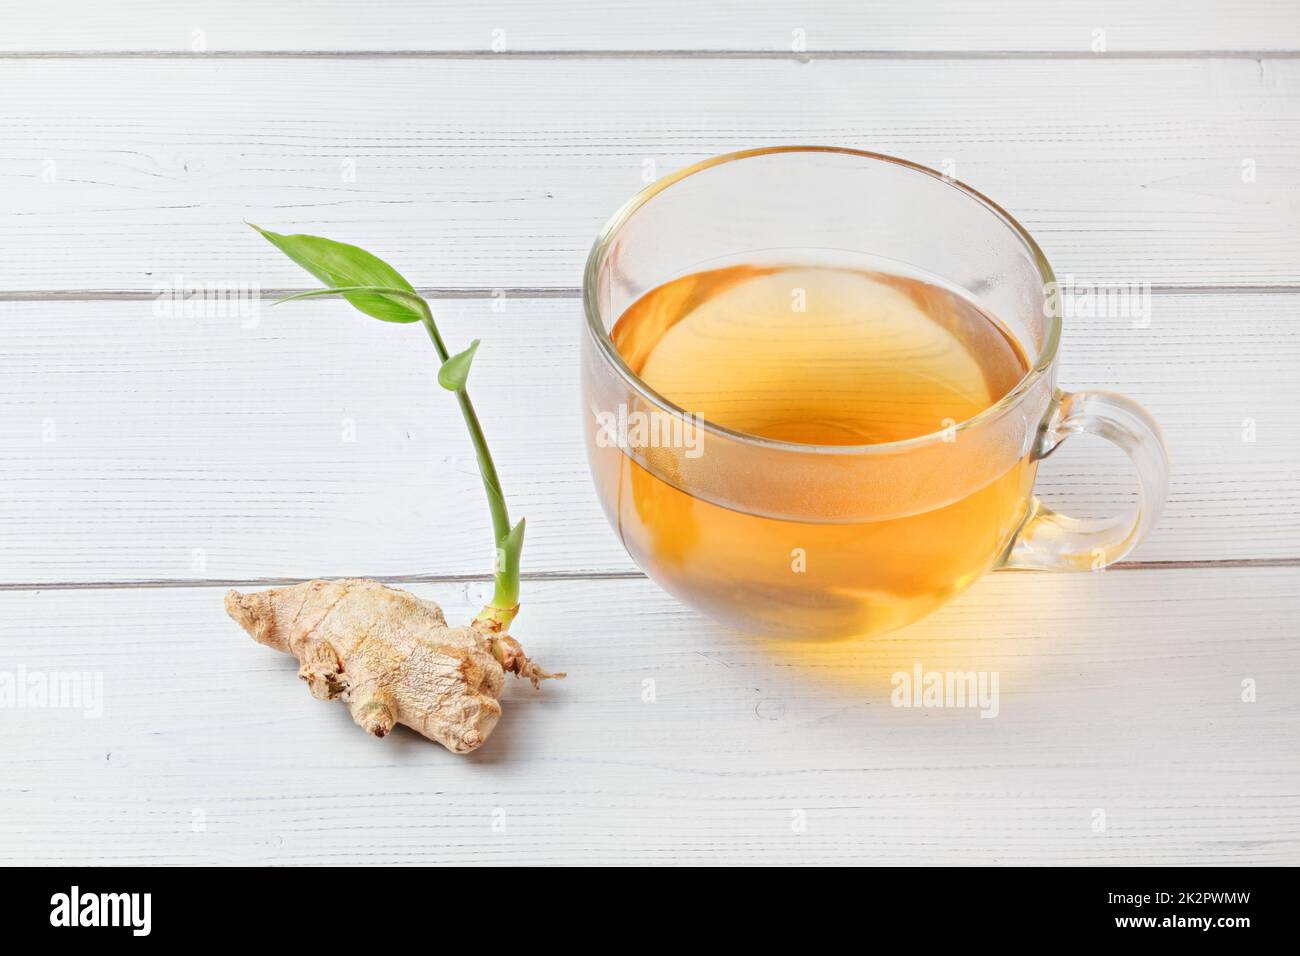 Coppa del preparato di fresco tè color ambra, il vapore caldo rende minuscole gocce umido sul vetro. A secco di radice di zenzero con il germoglio verde accanto ad essa. Foto Stock